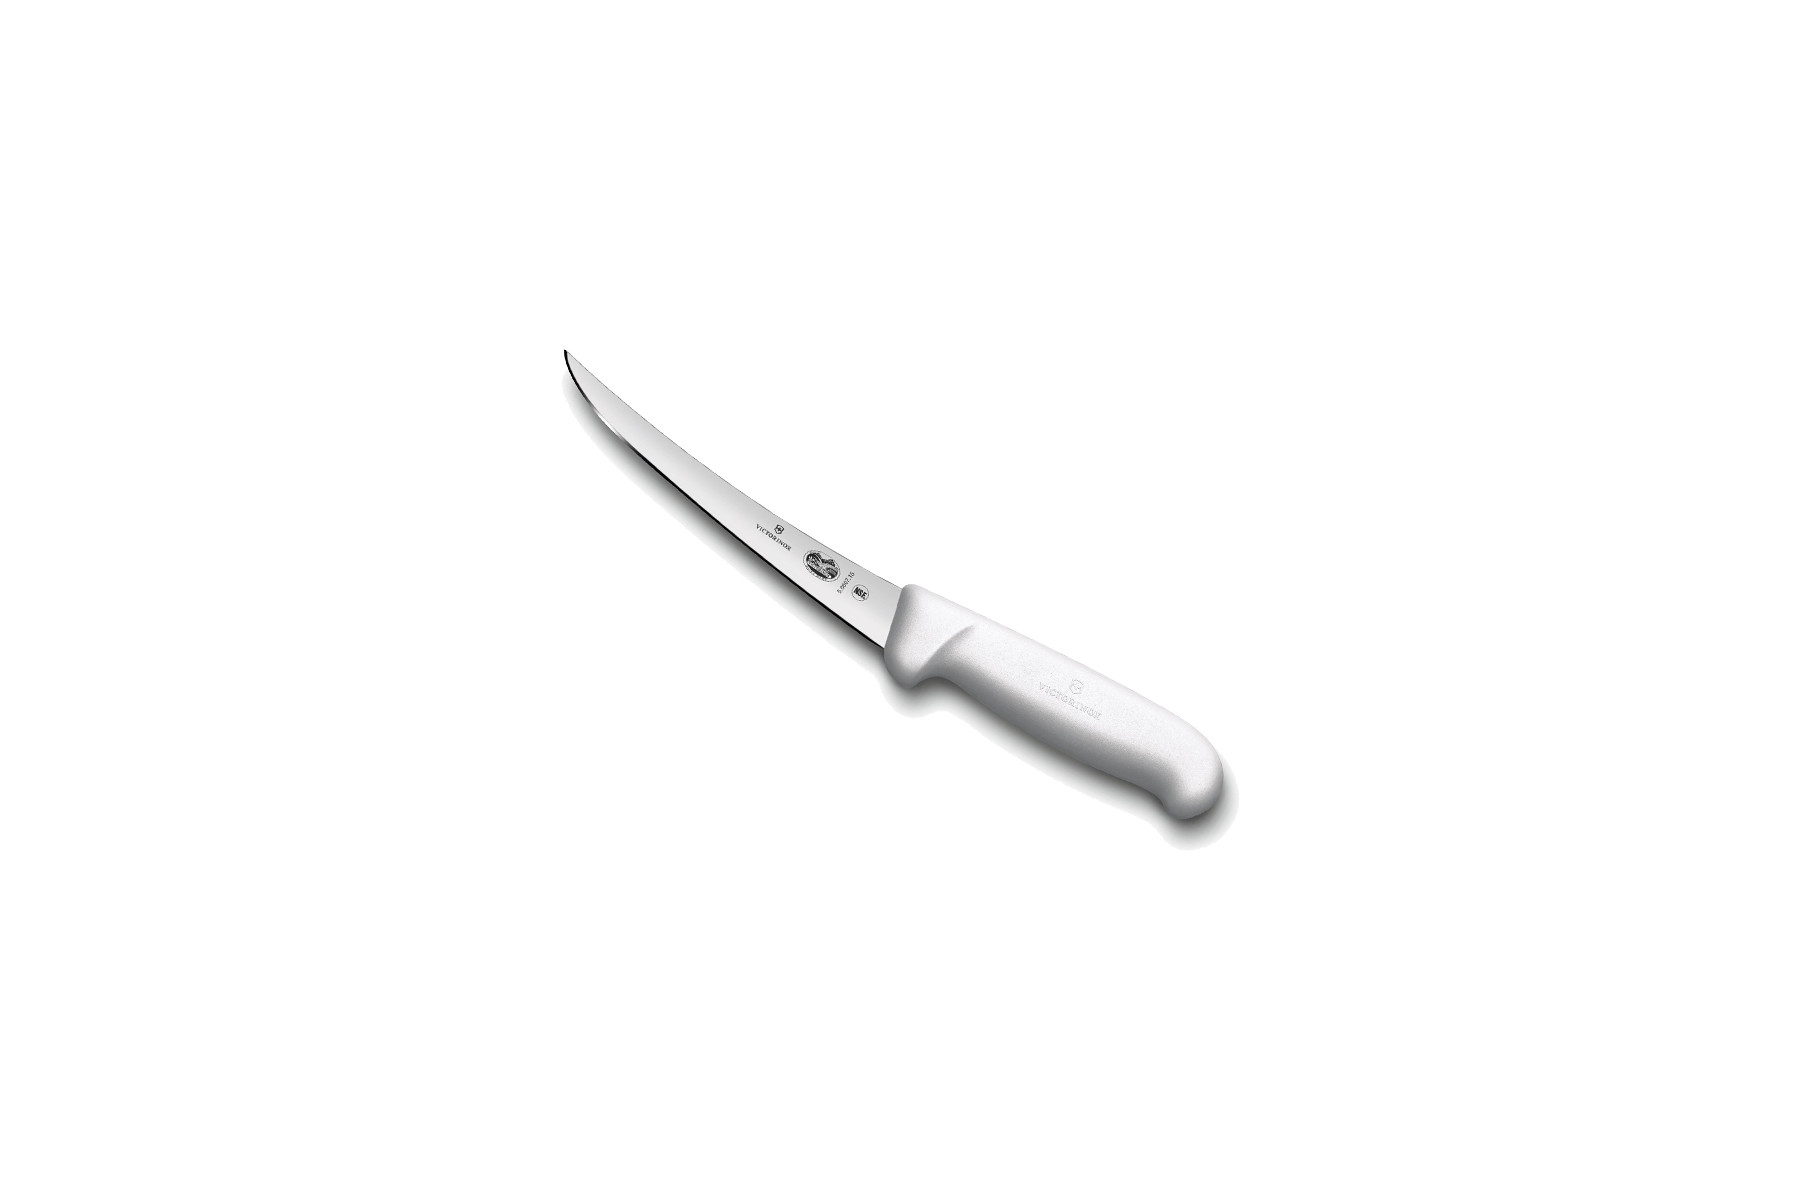 Couteau à désosser Victorinox lame dos renversé 15 cm - Manche Fibrox blanc